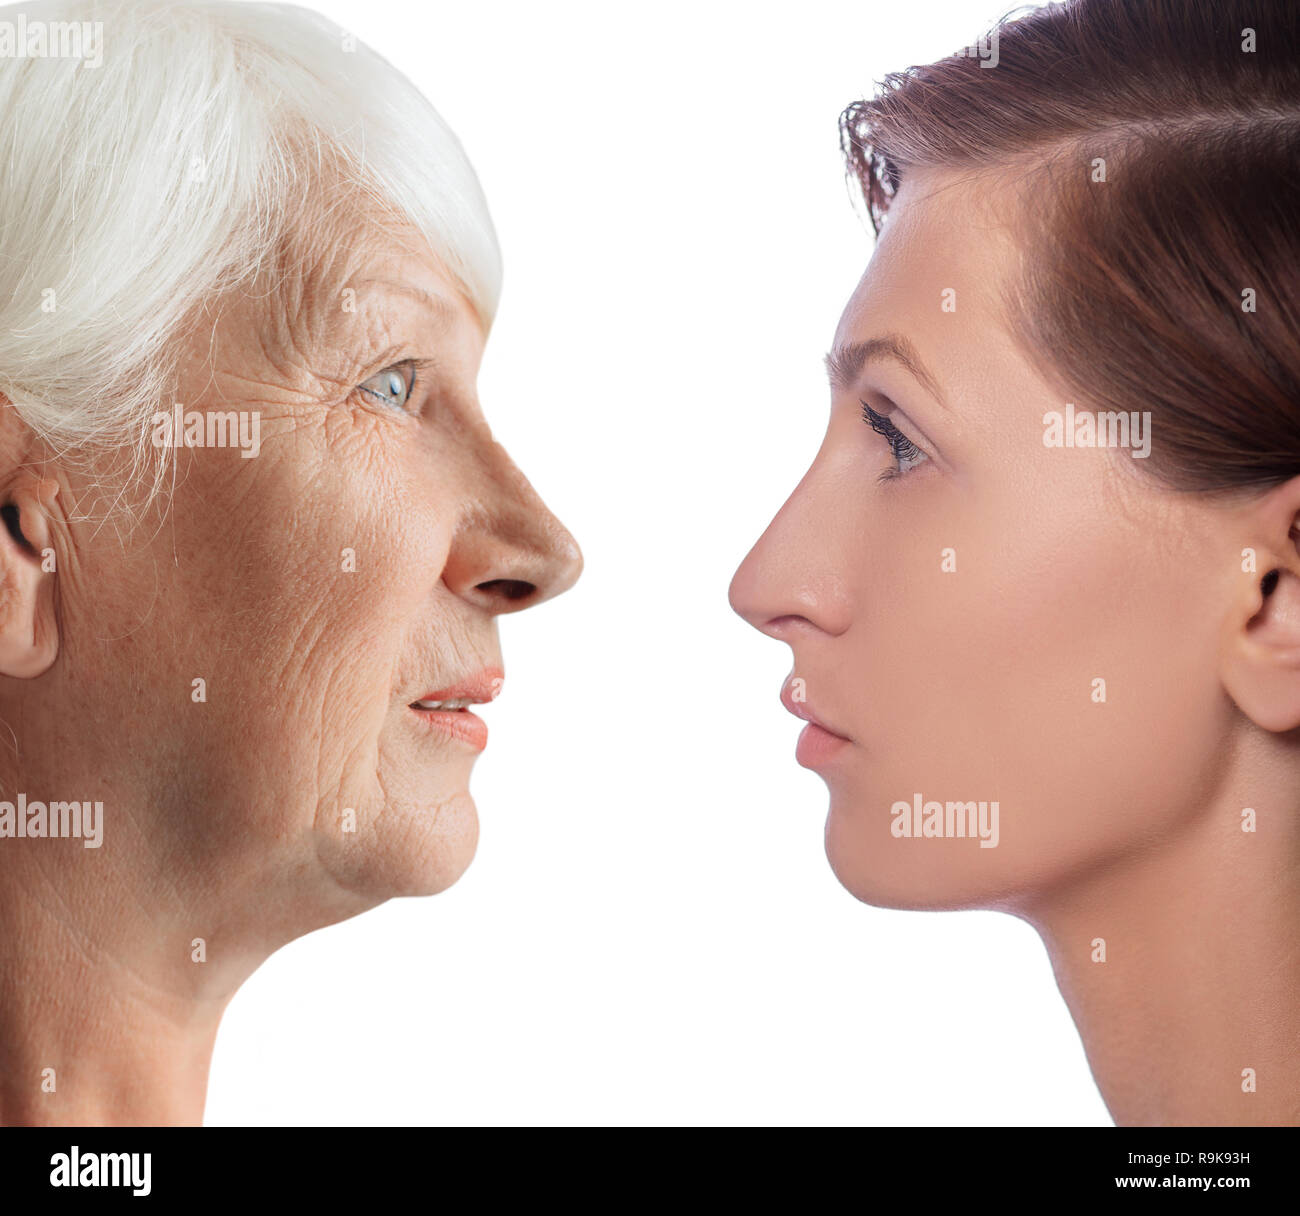 Montrant le processus de vieillissement. Visages de jeunes femmes et de femme. Comparaison visages féminins, processus de vieillissement Banque D'Images